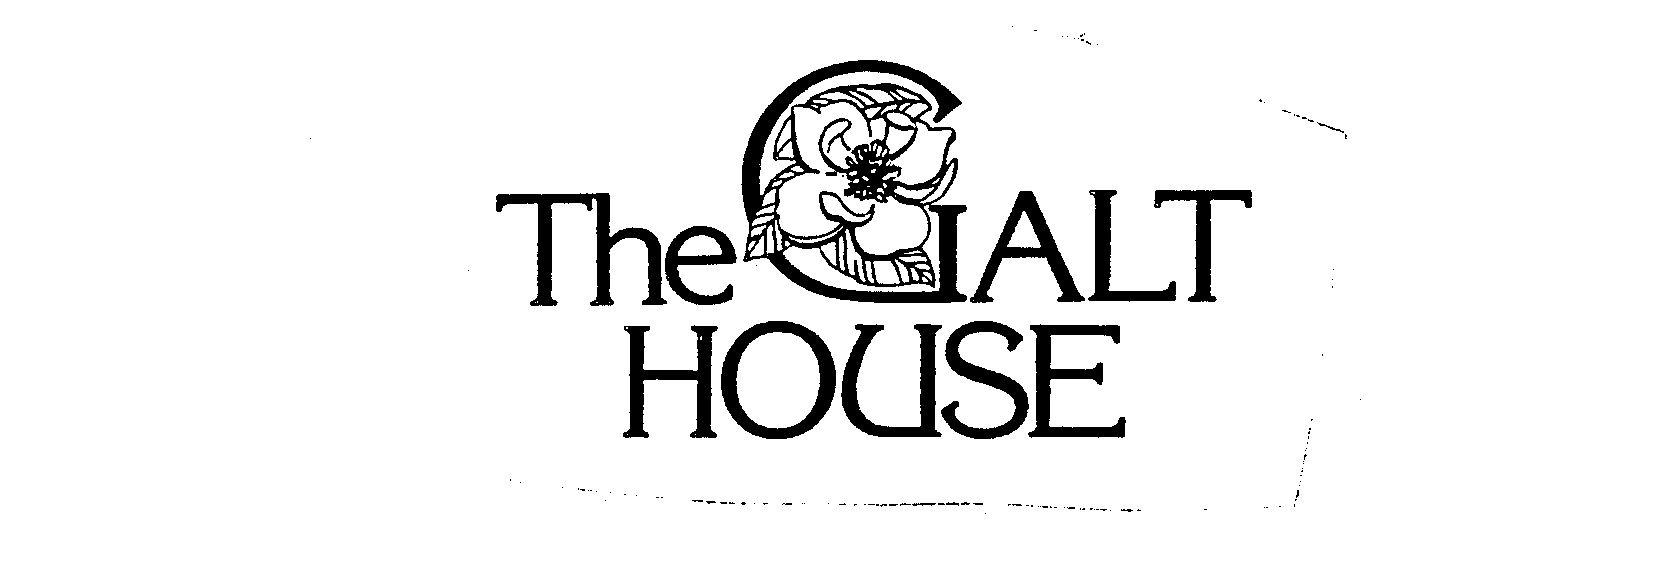  THE GALT HOUSE